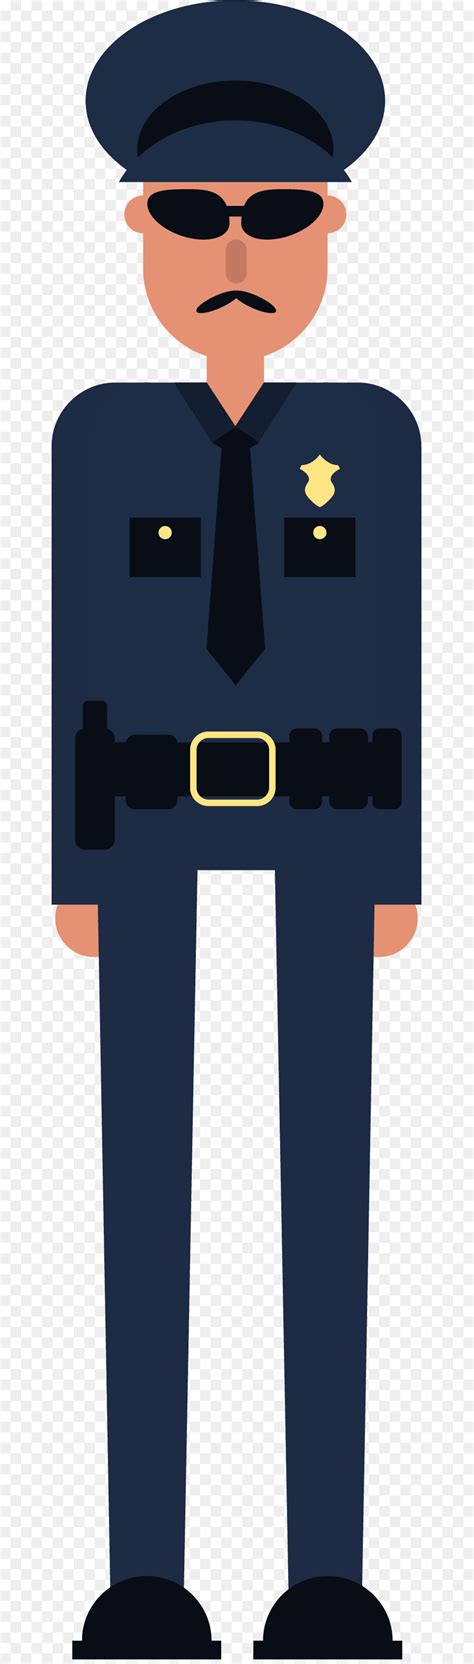 ضابط شرطة الشرطة الكرتون صورة بابوا نيو غينيا